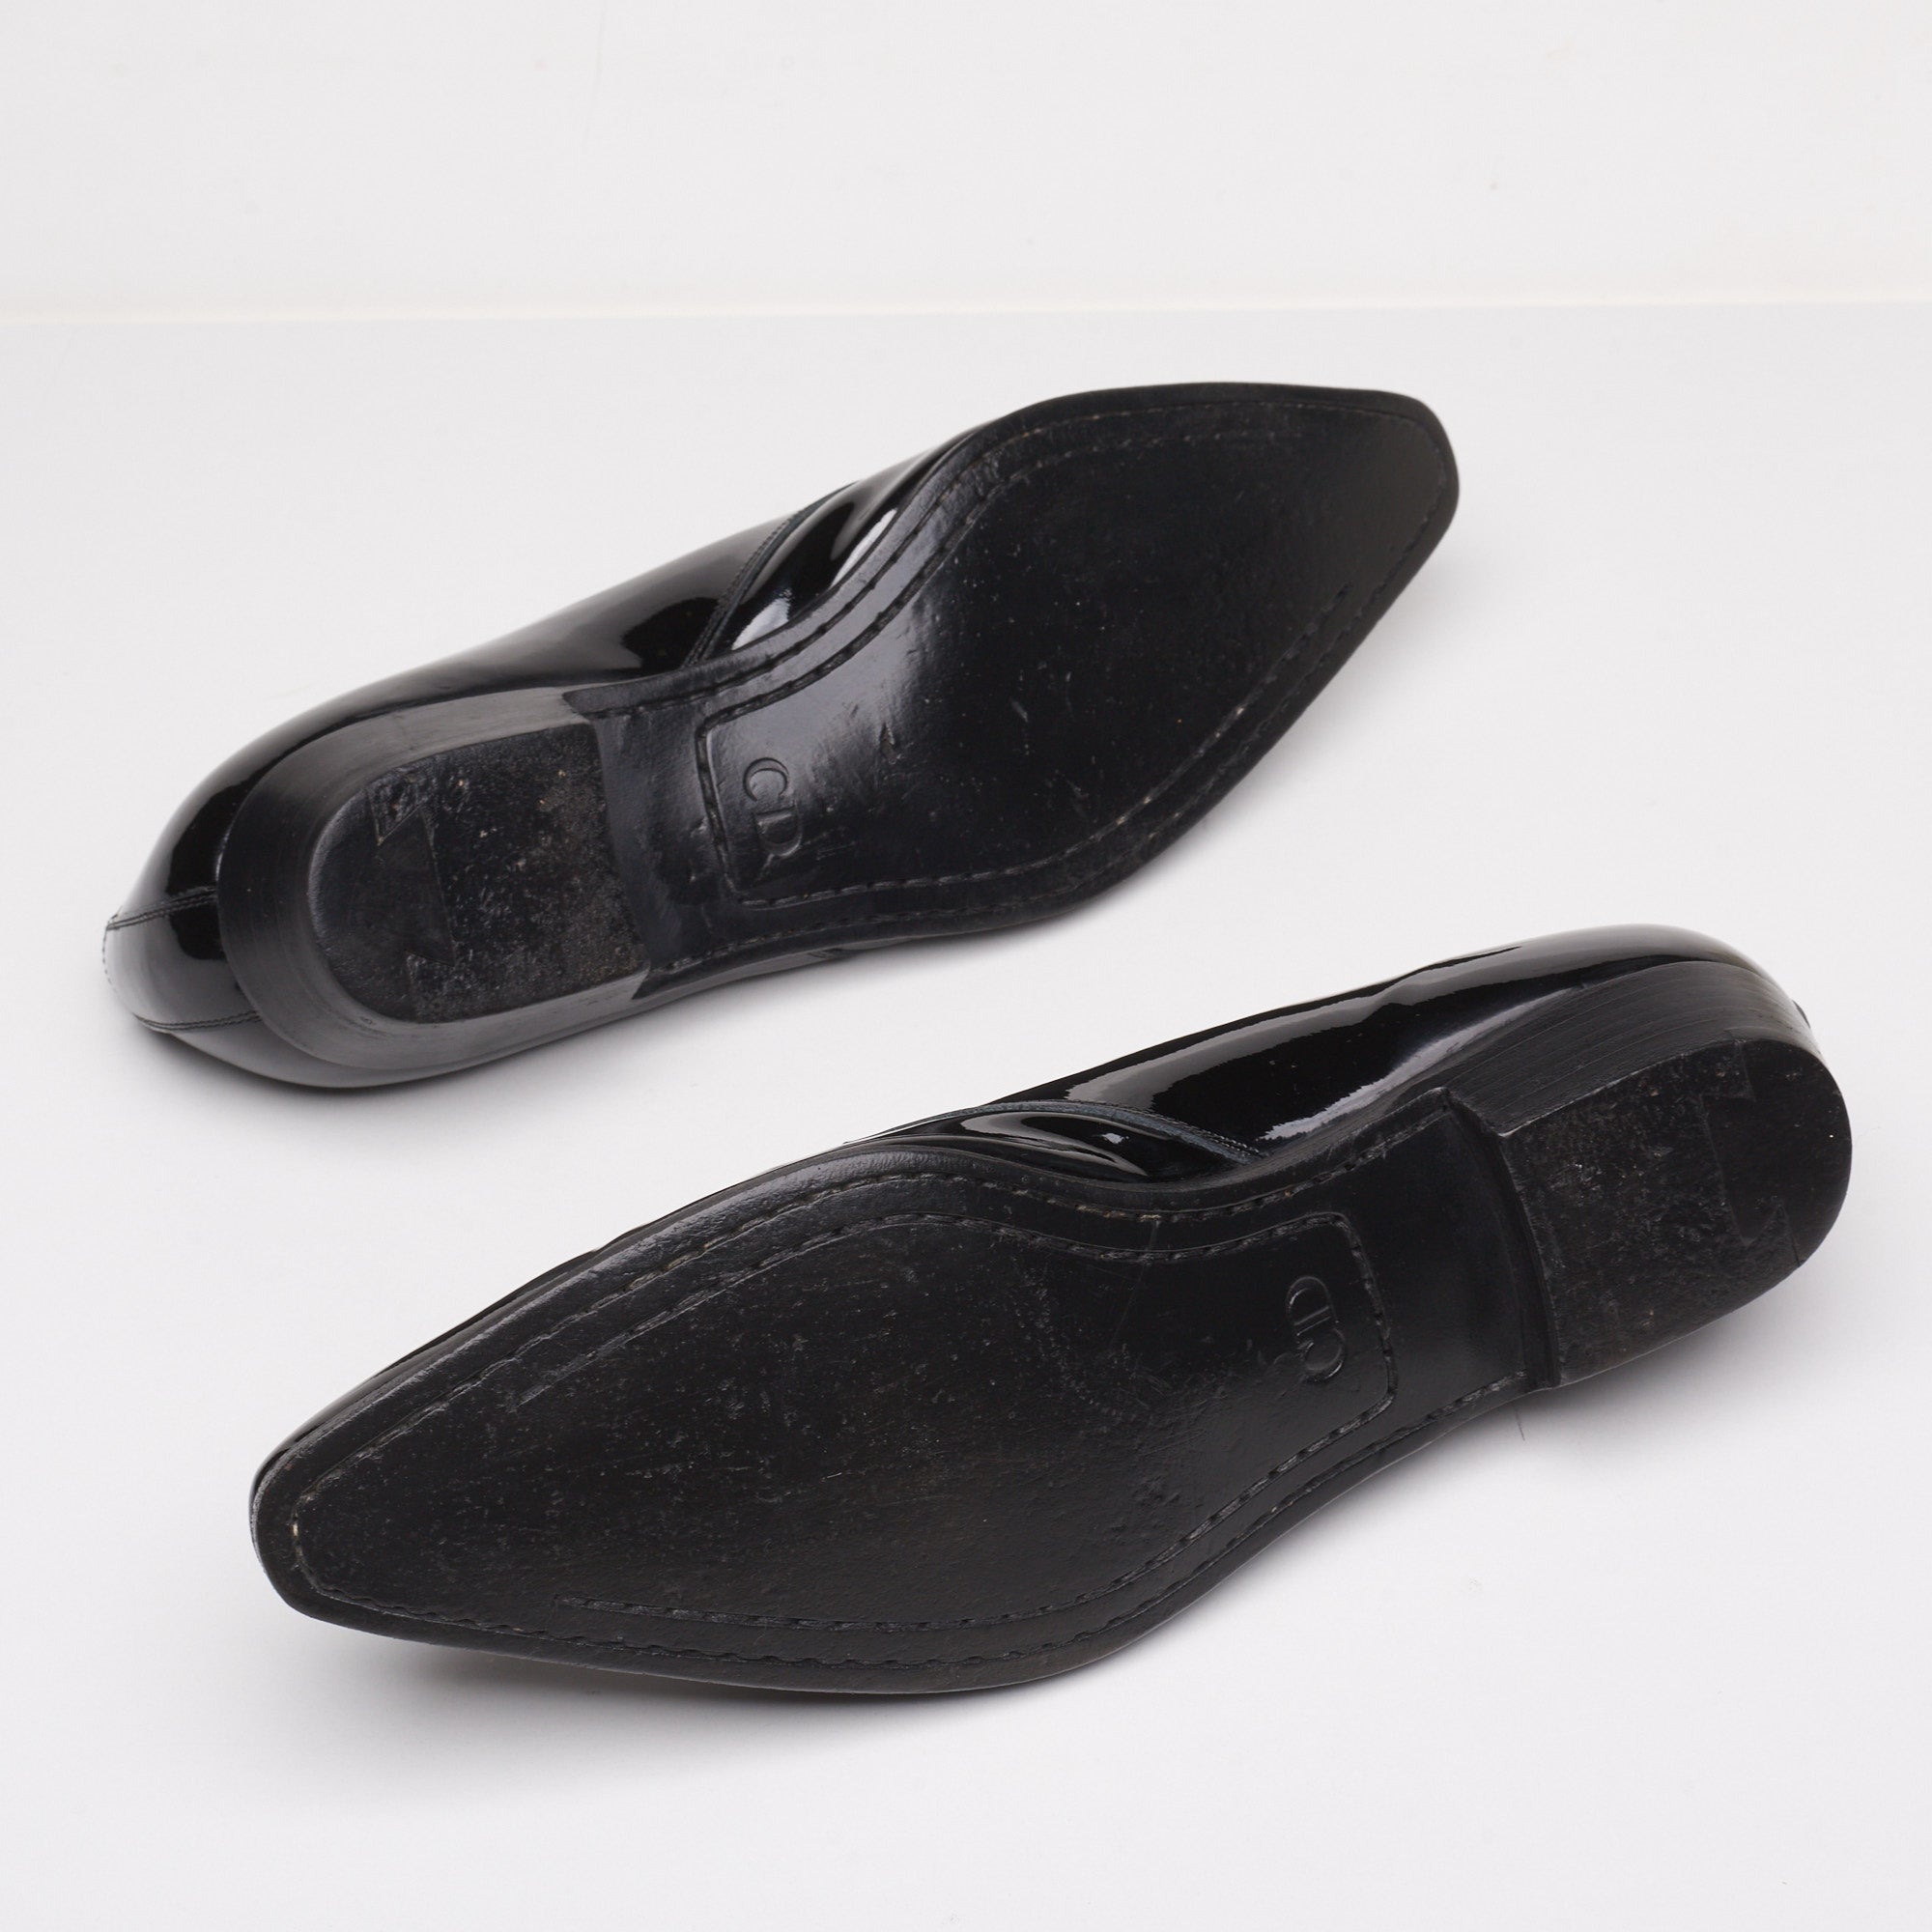 DIOR Défilé Black Patent Leather 2 Eyelet Derby Dress Shoes EU 42.5 NEW US 9.5 DIOR